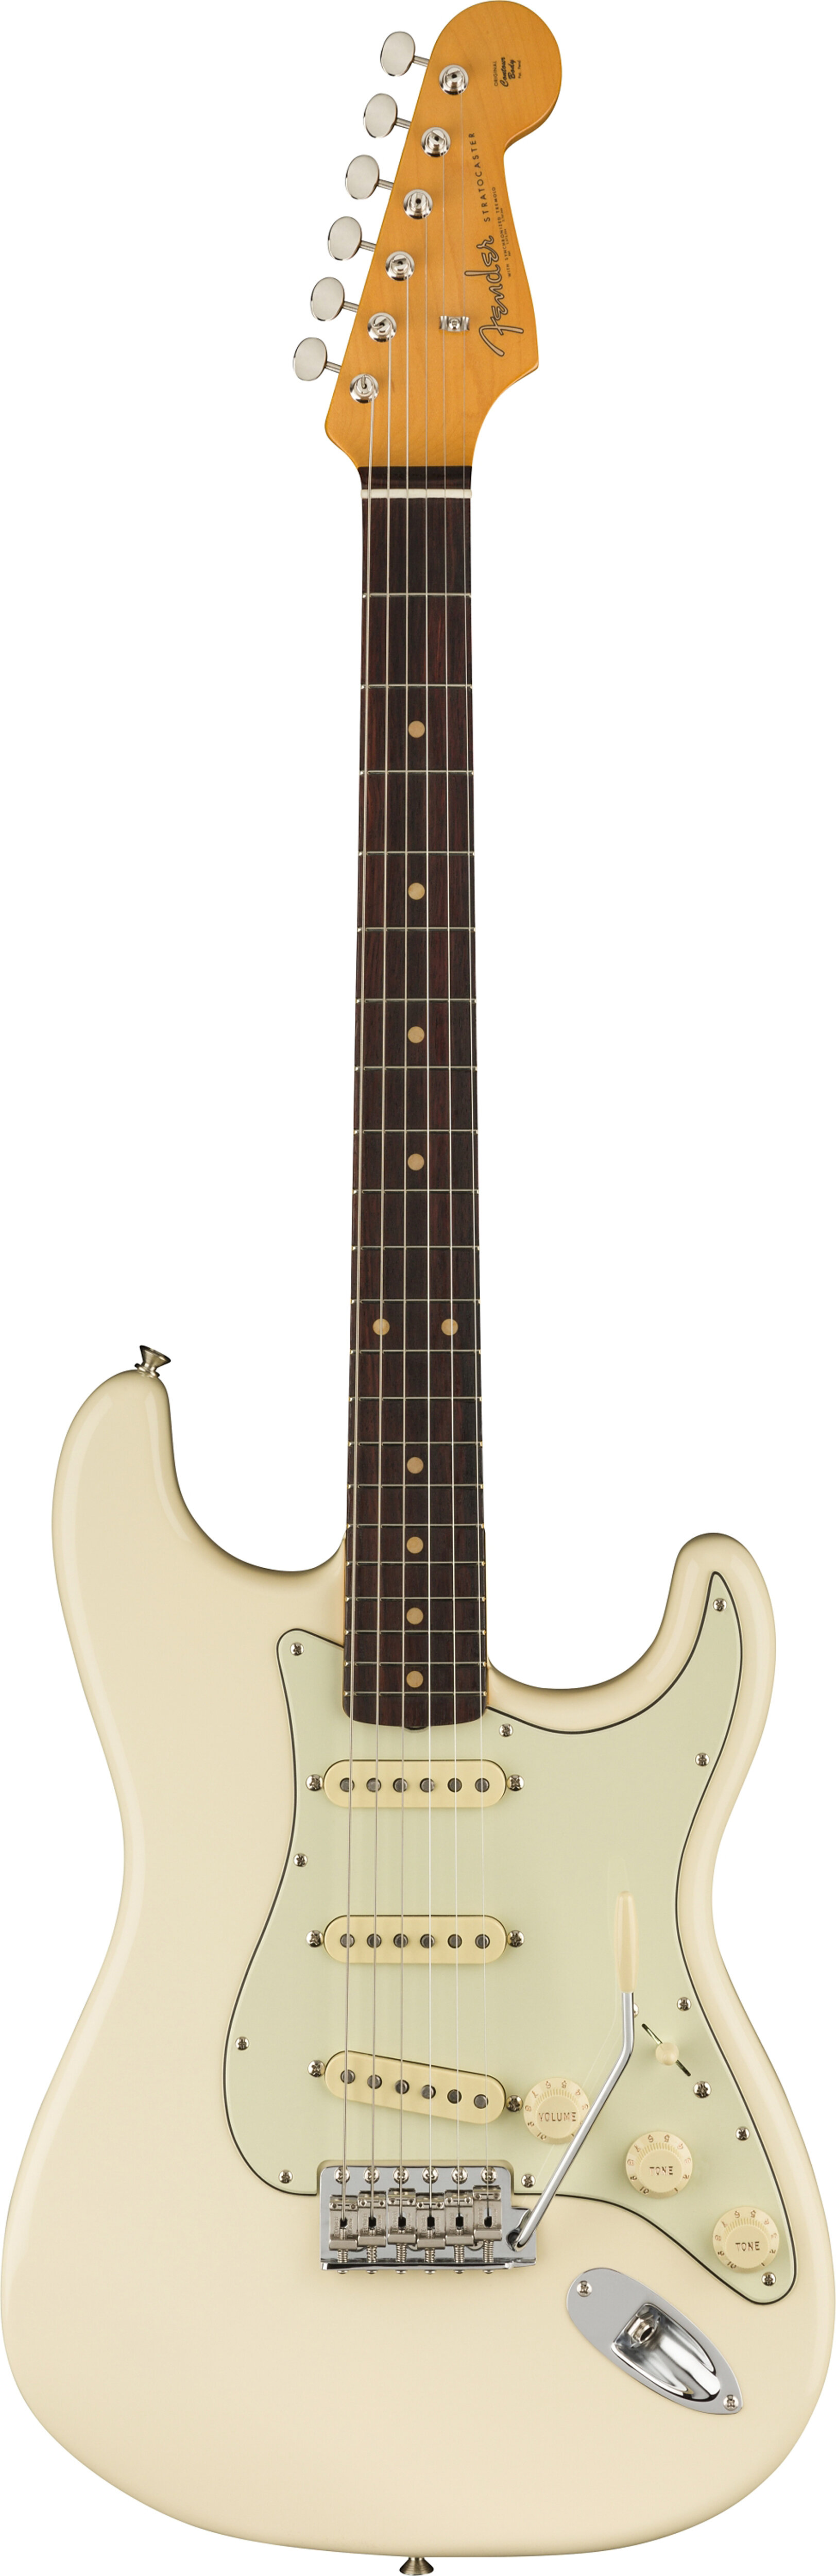 Fender 0110250805